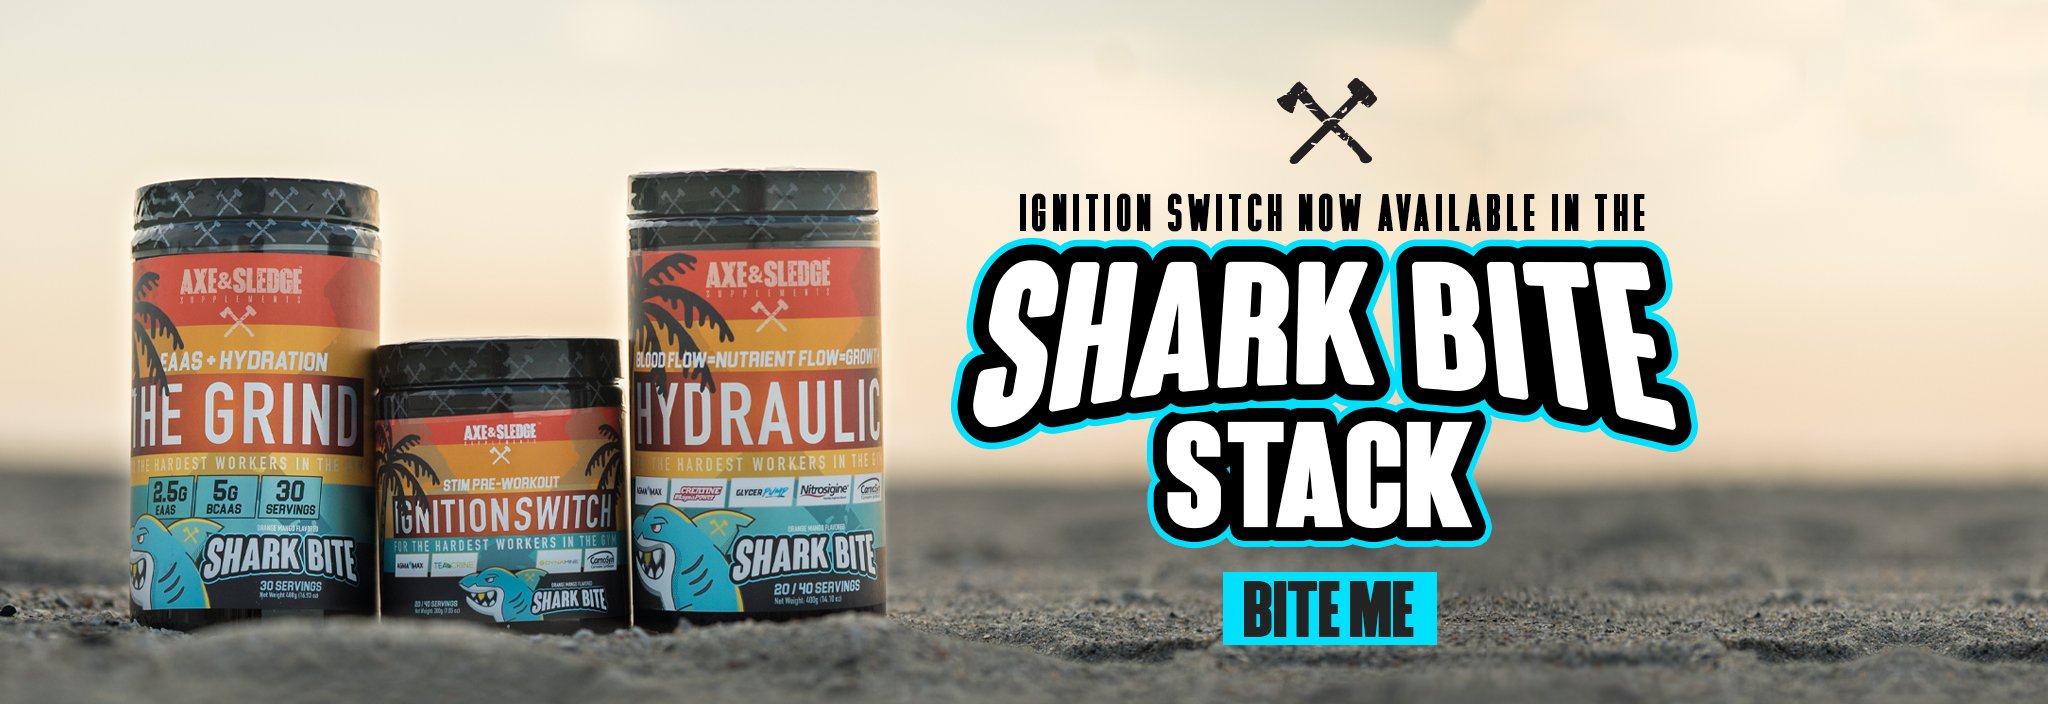 AXE & SLEDGE SHARK BITE STACK!